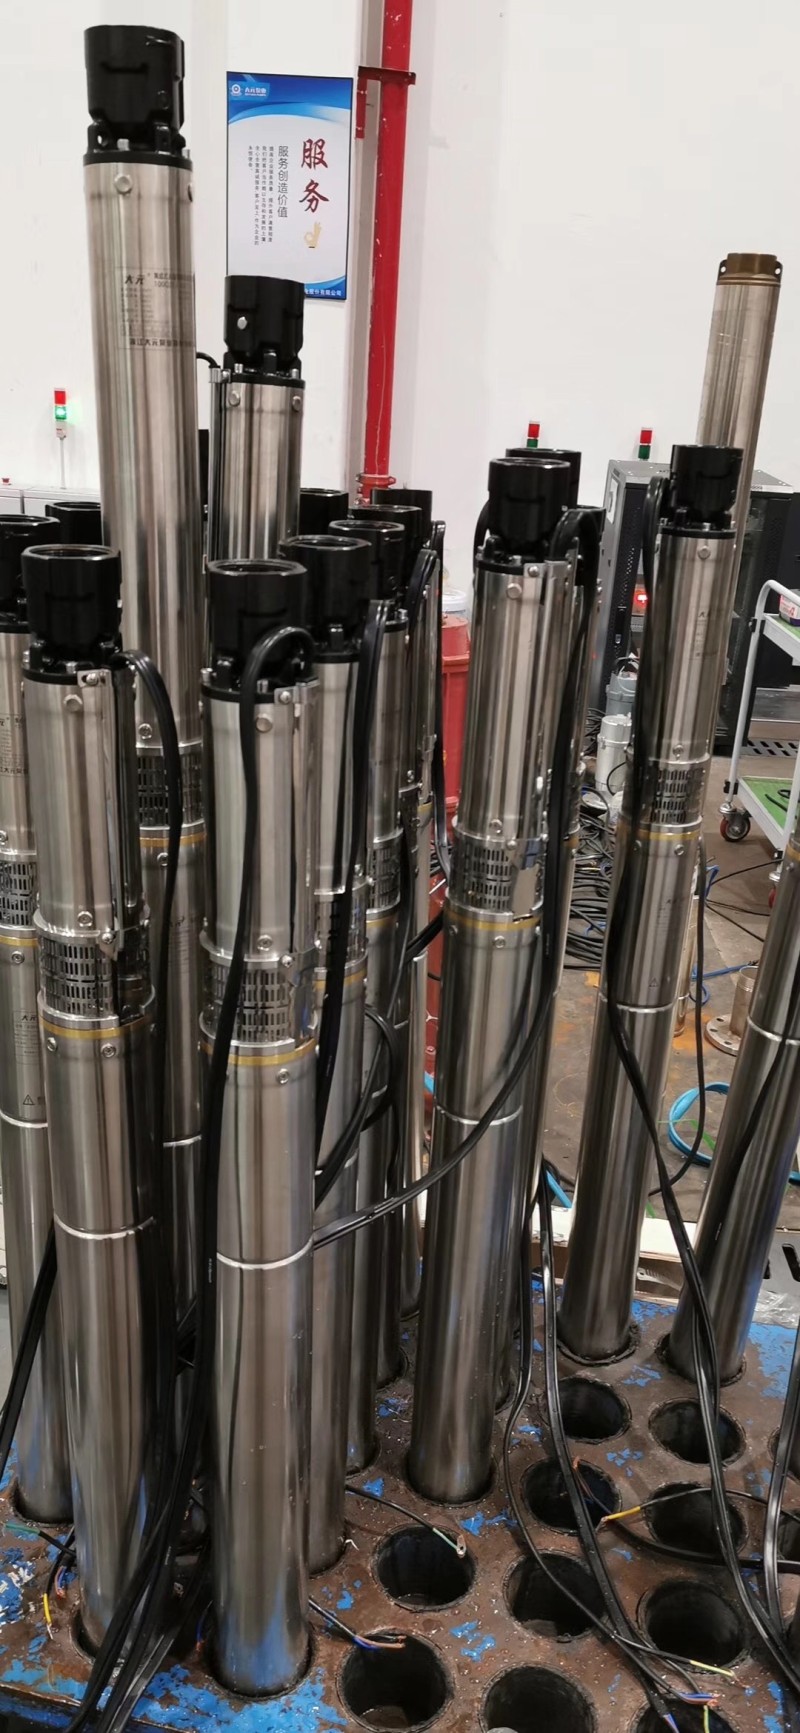 EfiPolymers 机器人电机 环氧树脂胶 潜水泵灌封胶-- 深圳汇众易力高电子有限公司